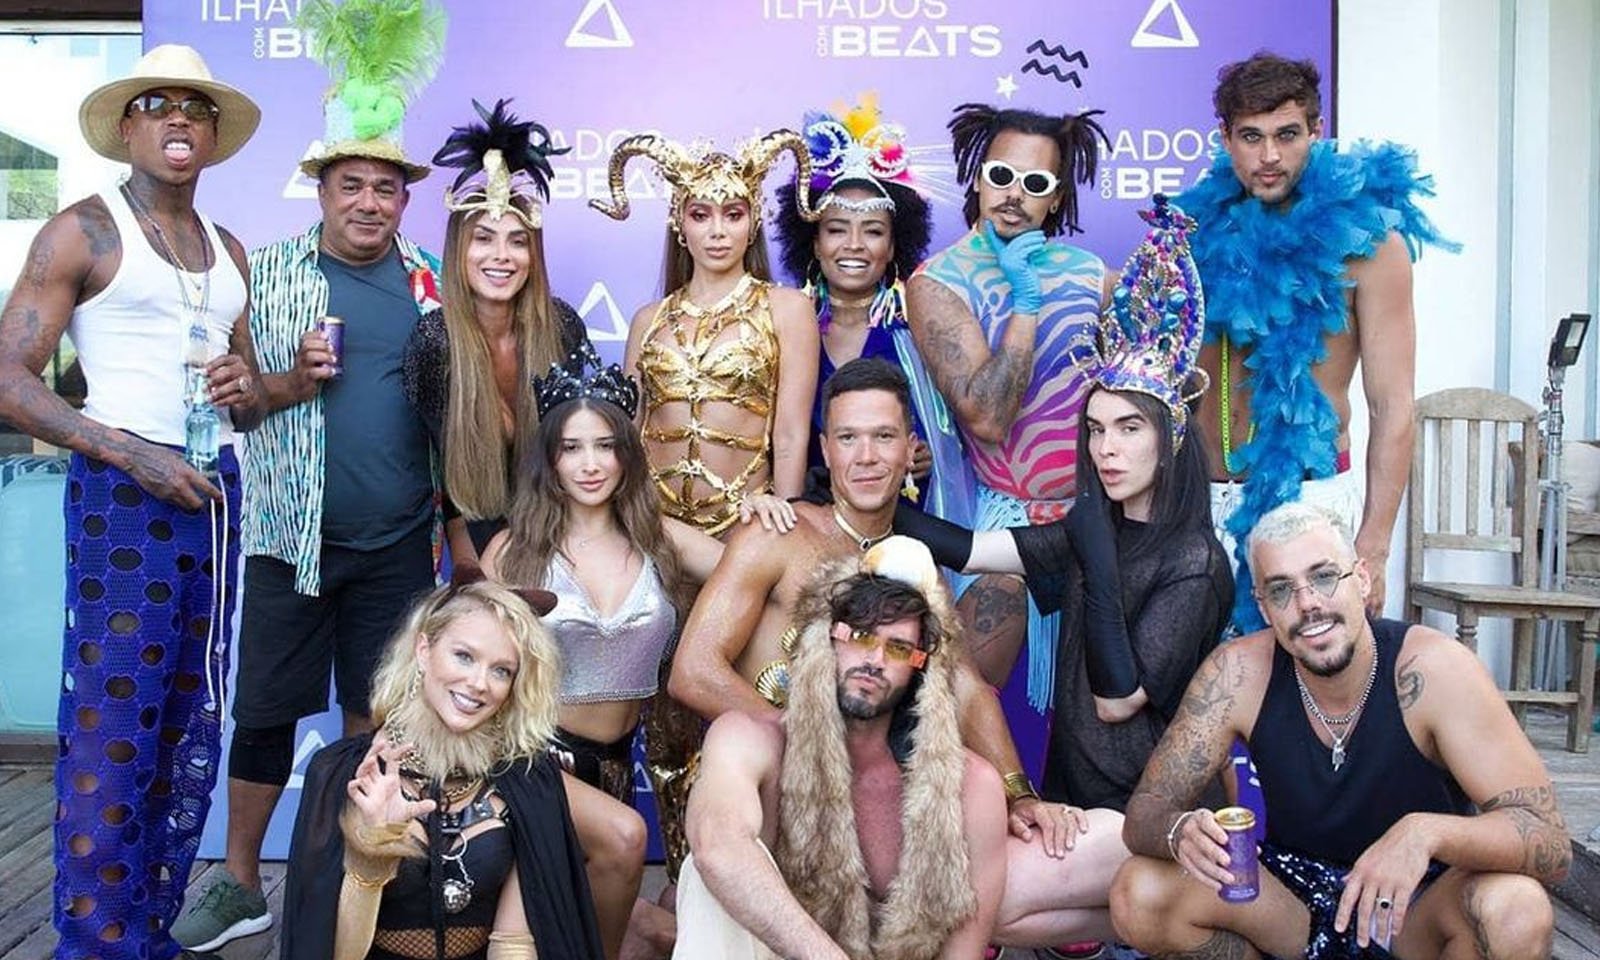 Anitta: conheça a ilha do reality show 'Ilhados com Beats'